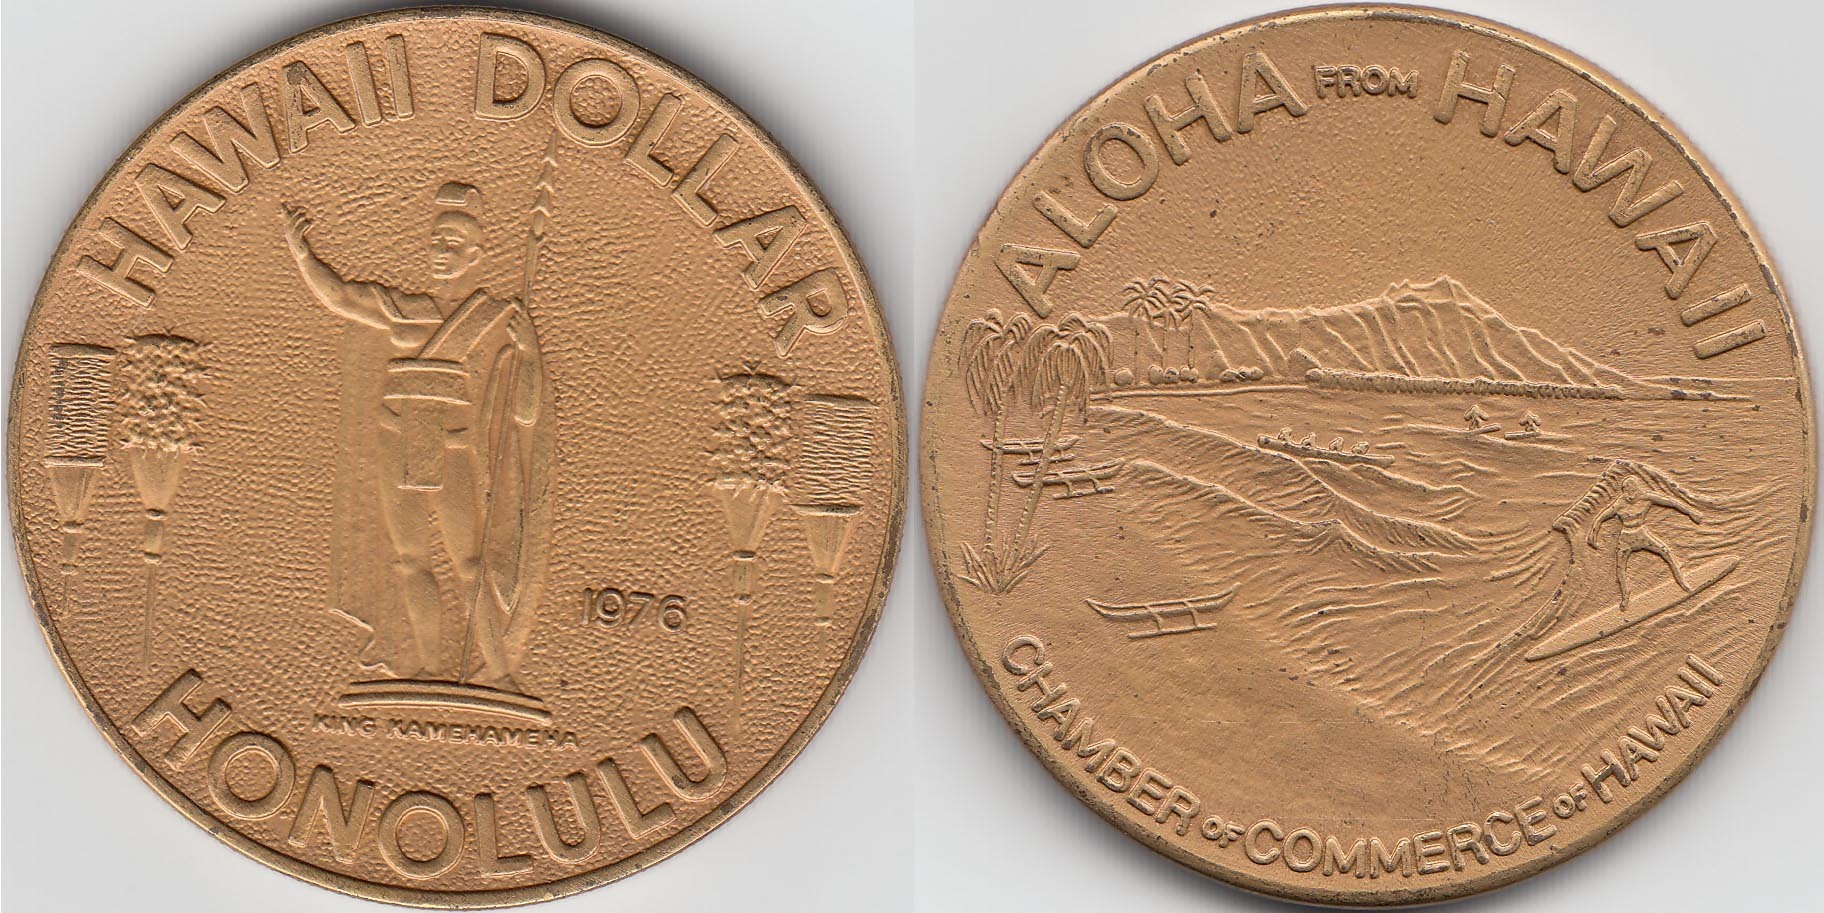 HAWAI - HAWAII. 1 DOLAR (DOLLAR) DE 1976.